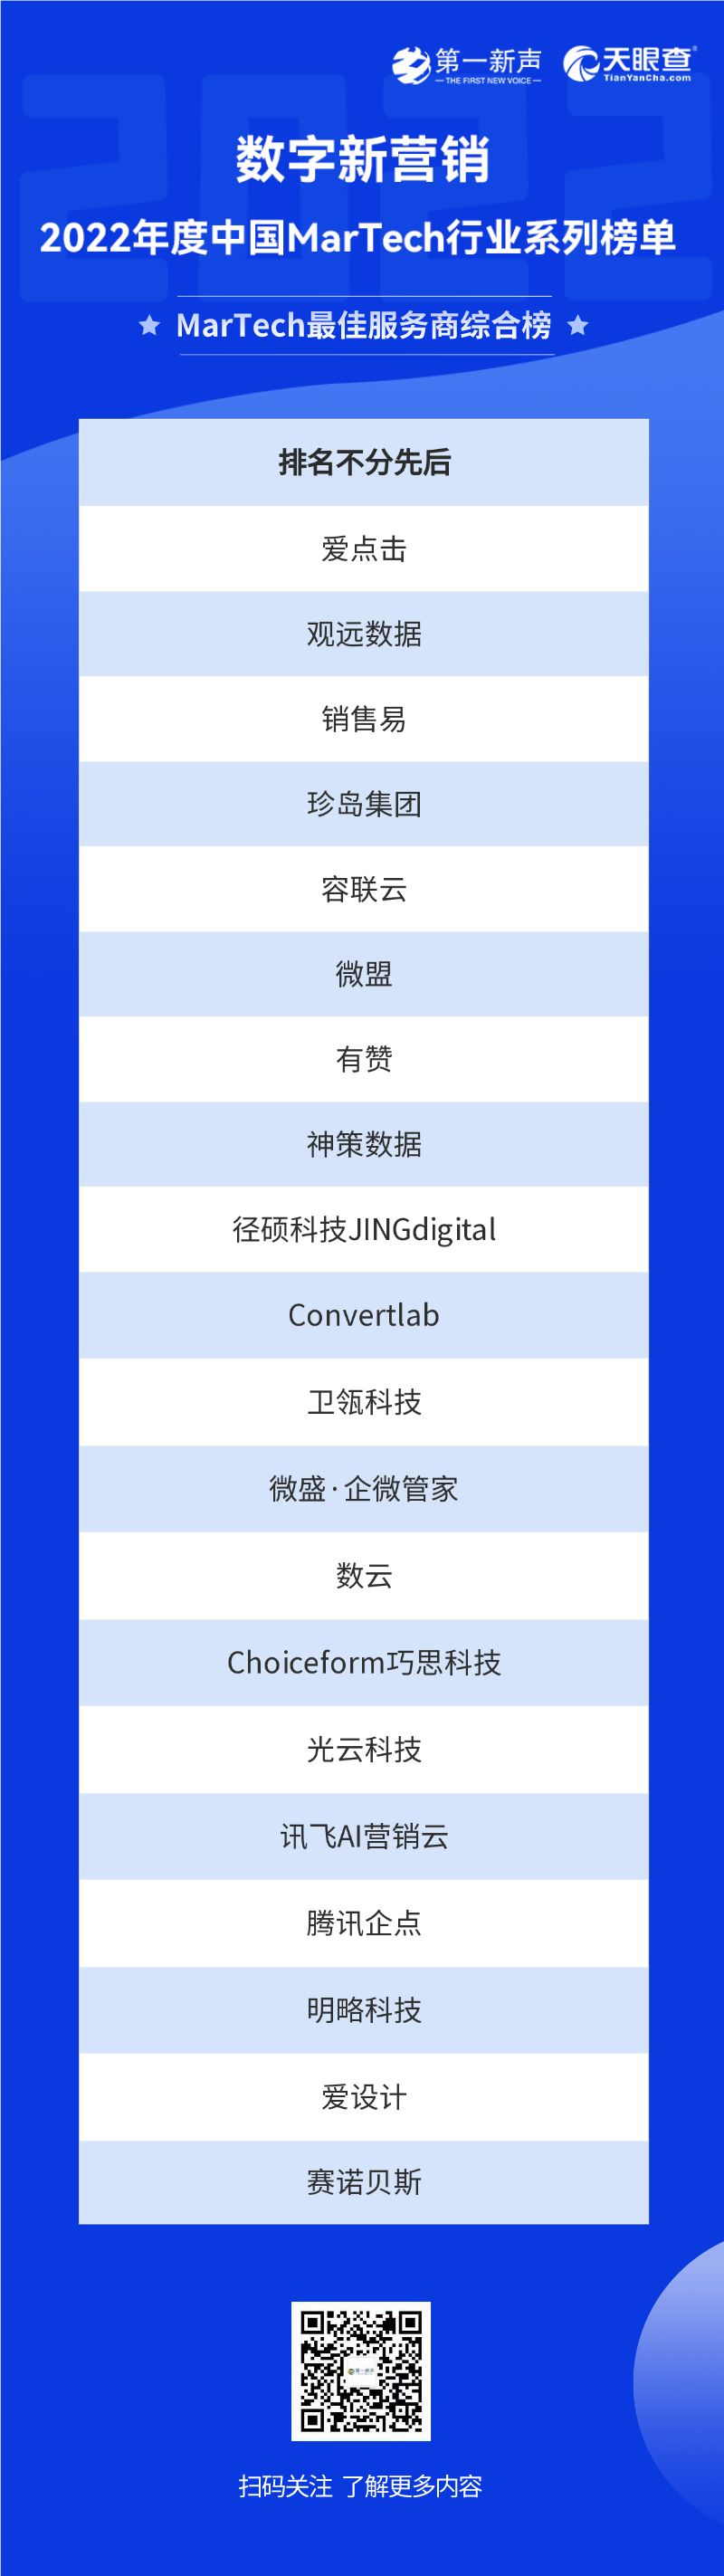 2022年度中国MarTech行业系列榜单正式发布，句子互动入选SCRM最佳服务商 第15张